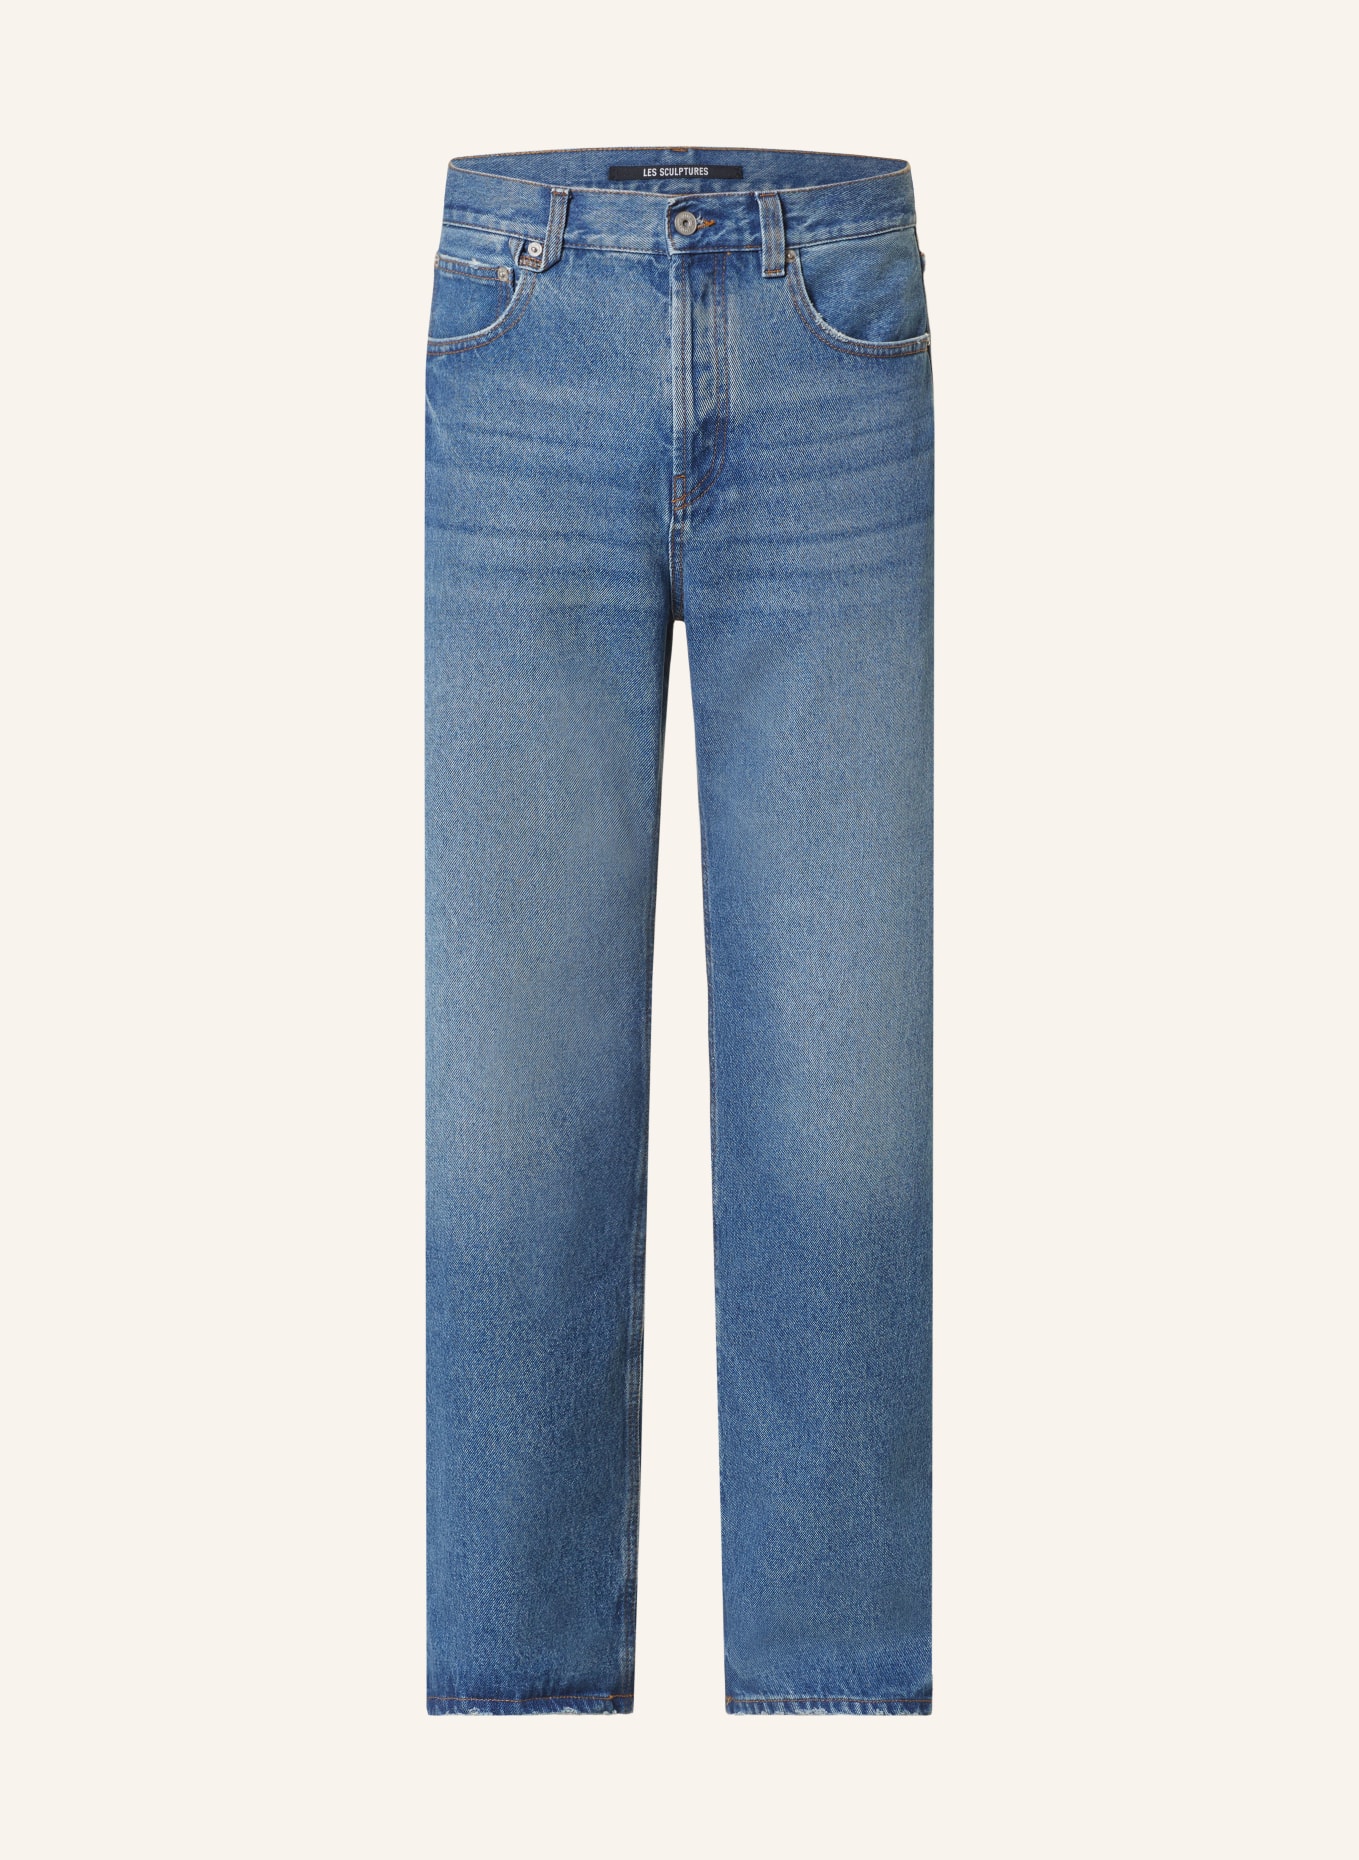 JACQUEMUS Jeans LE DE NIMES DROIT Regular Fit, Farbe: 332 BLUE/TABAC (Bild 1)